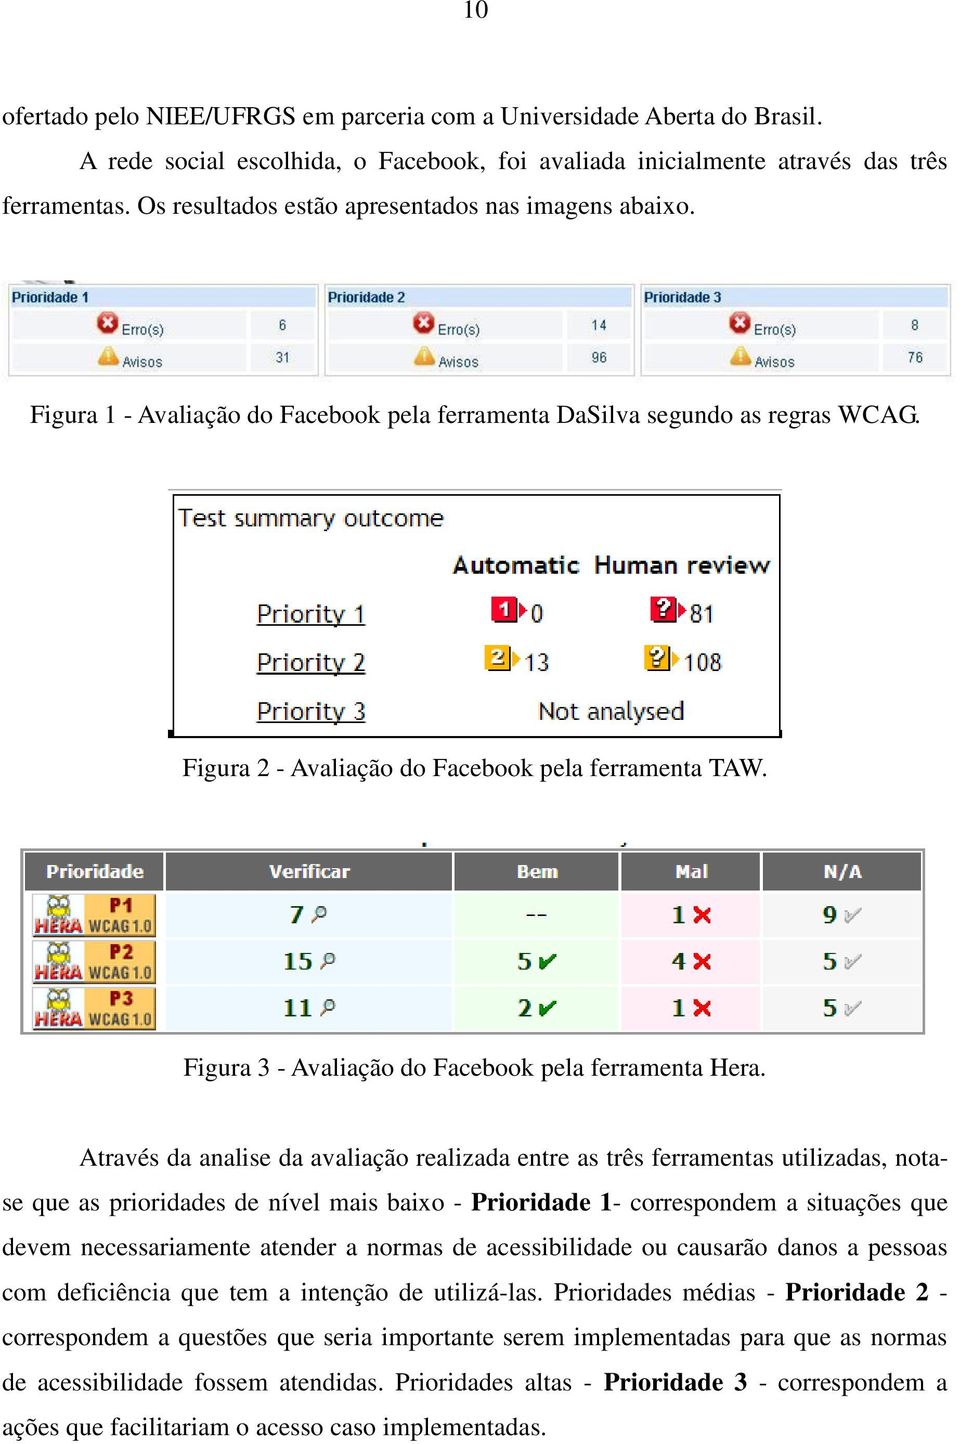 Figura 3 - Avaliação do Facebook pela ferramenta Hera.